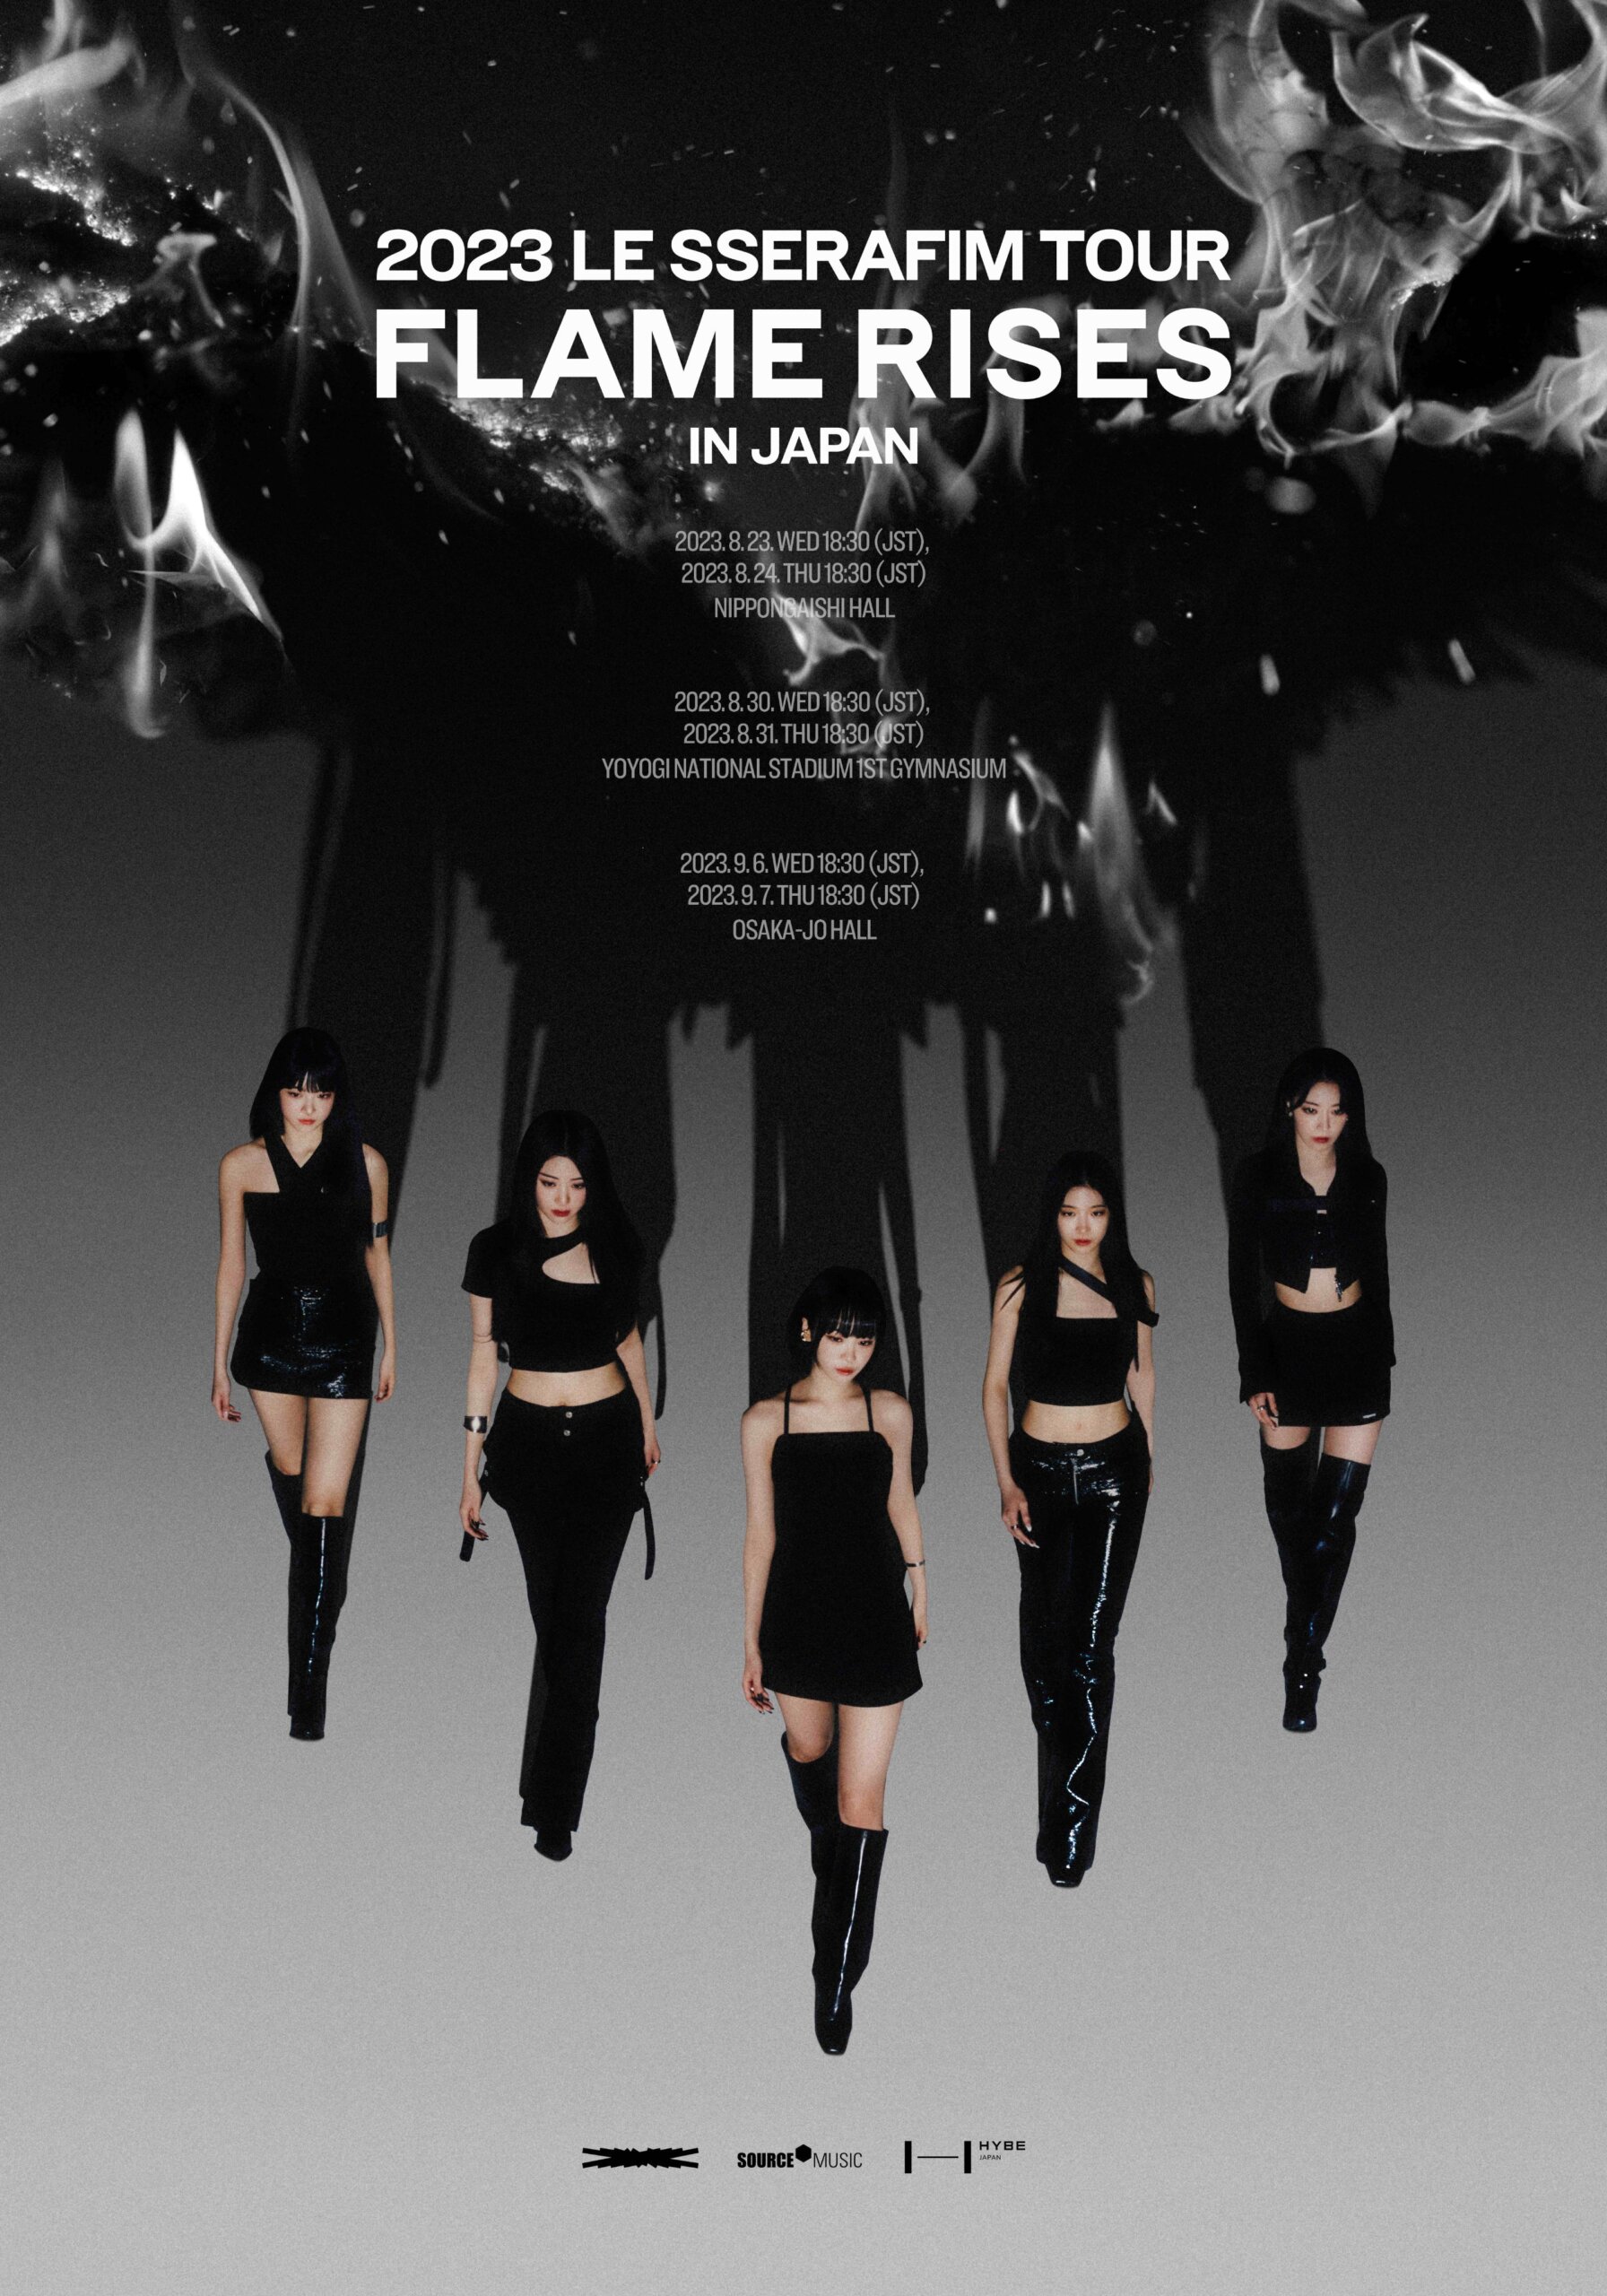 ルセラフィム】『2023 LE SSERAFIM TOUR 'FLAME RISES' IN JAPAN ...